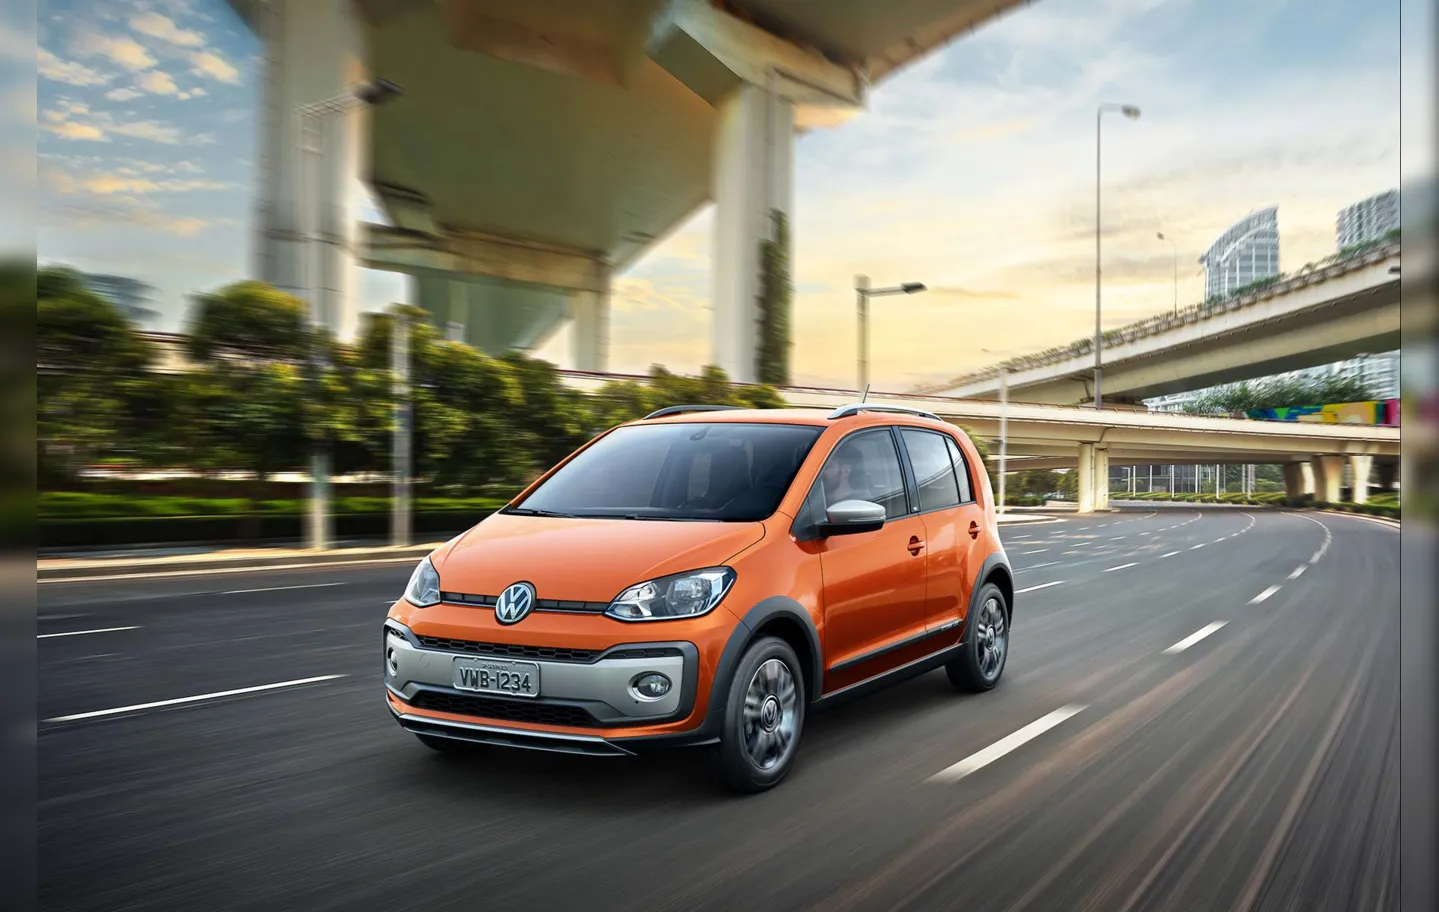 O Volkswagen Cross Up! 2018 chega às concessionárias com a nova cor laranja-habanero